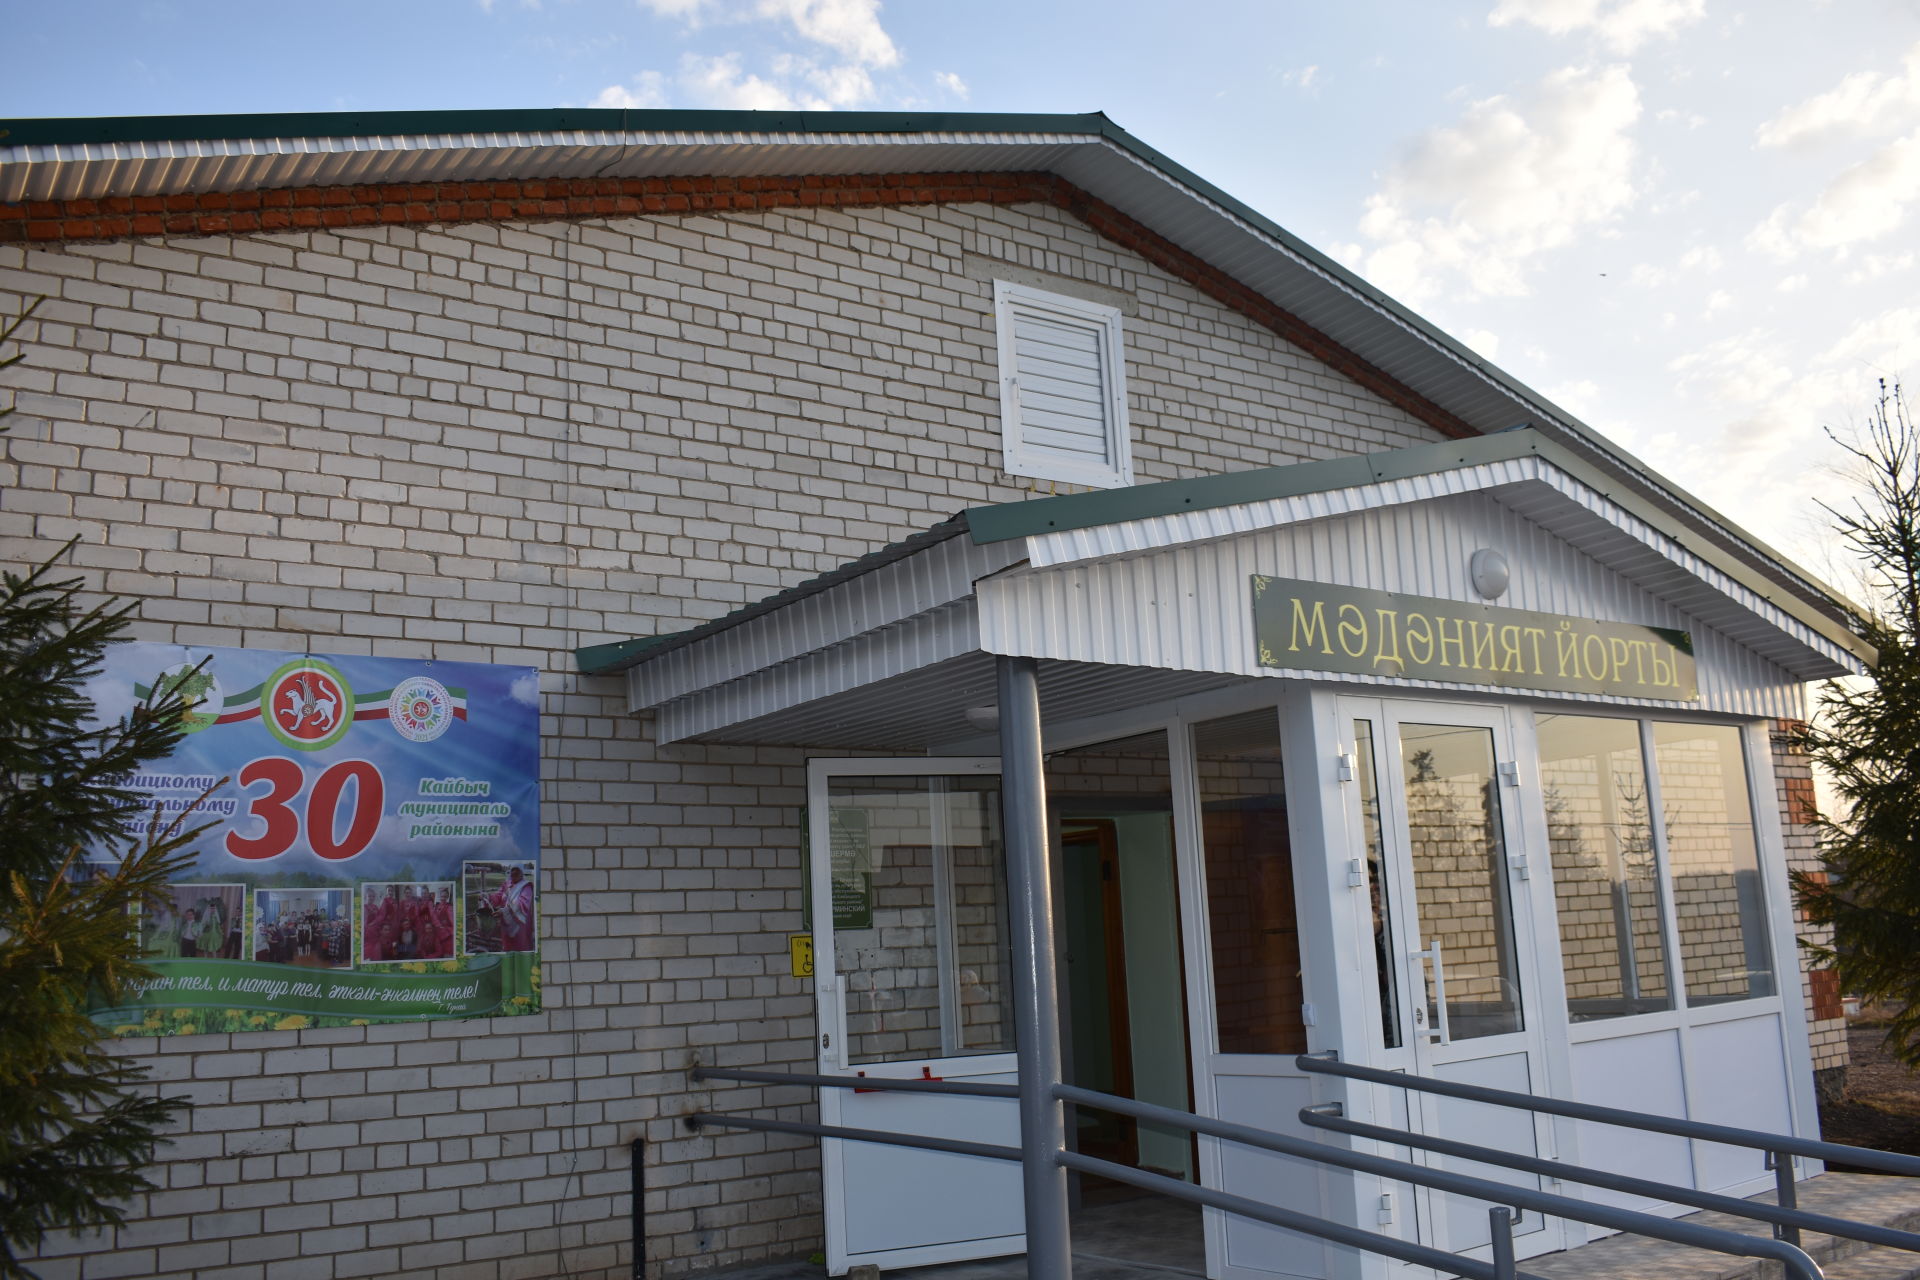 В Шушерме открылся сельский клуб, отремонтированный за счет средств районного бюджета